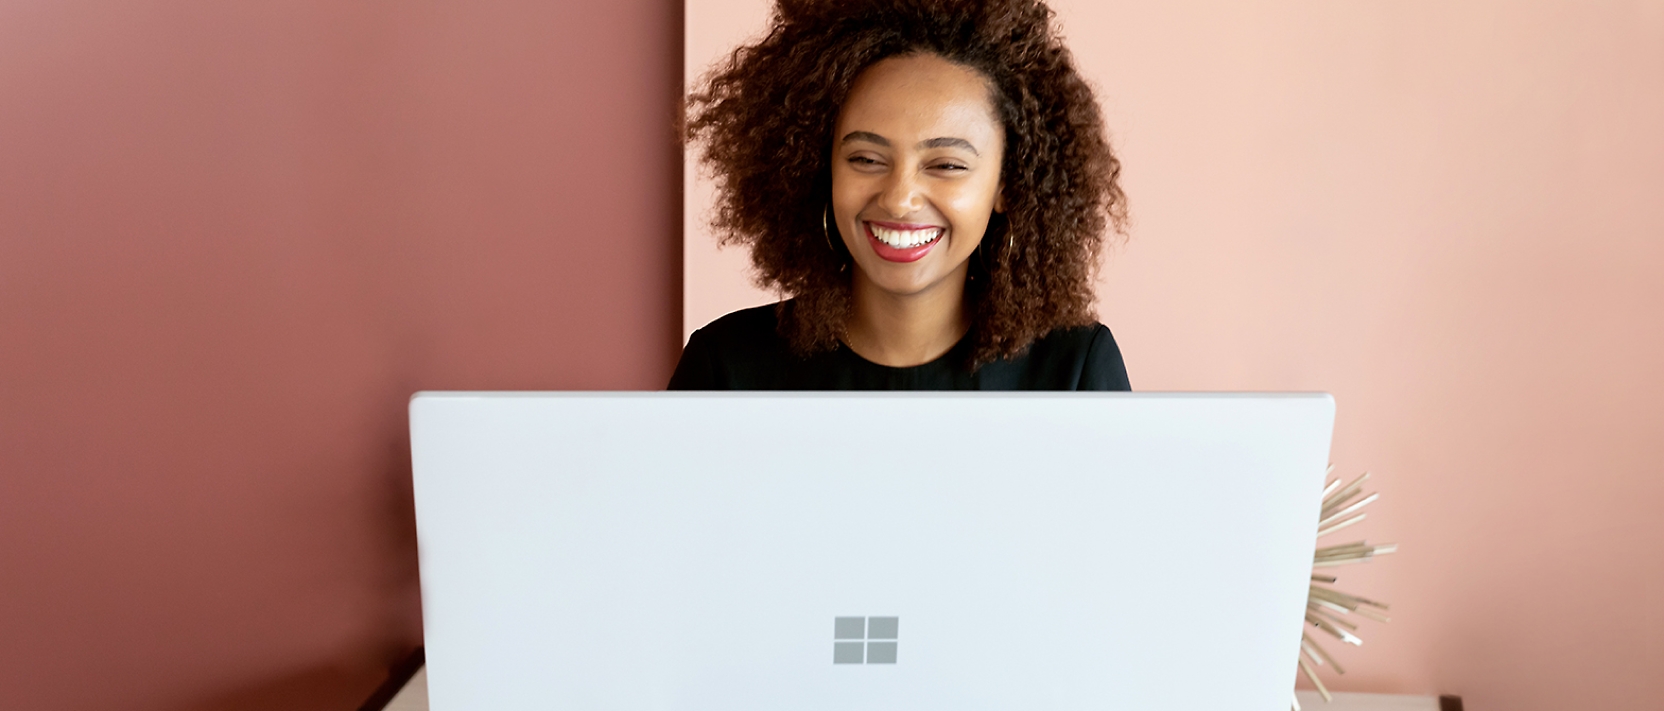 Donna che sorride mentre lavora al proprio computer portatile.